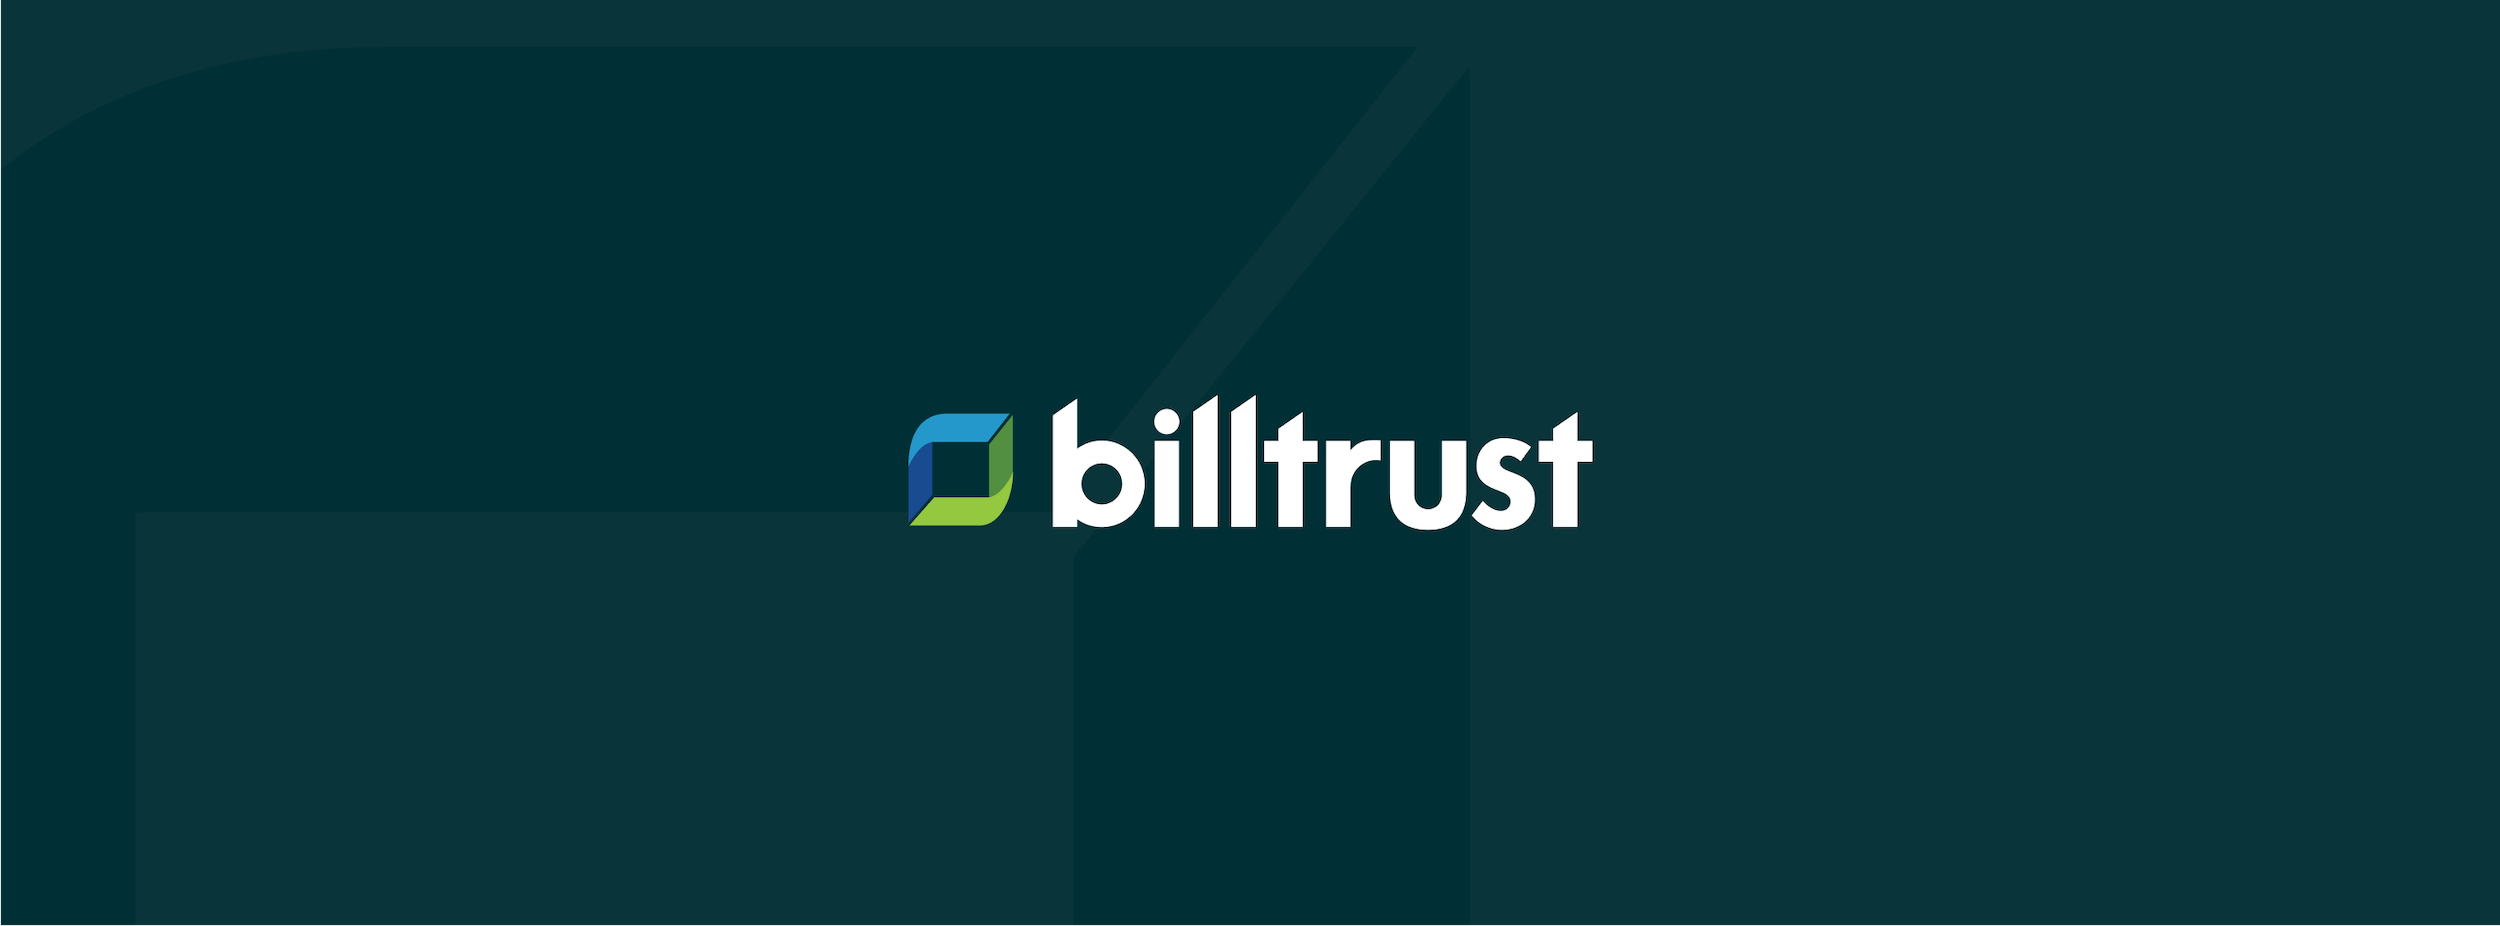 the billtrust logo on a dark green background